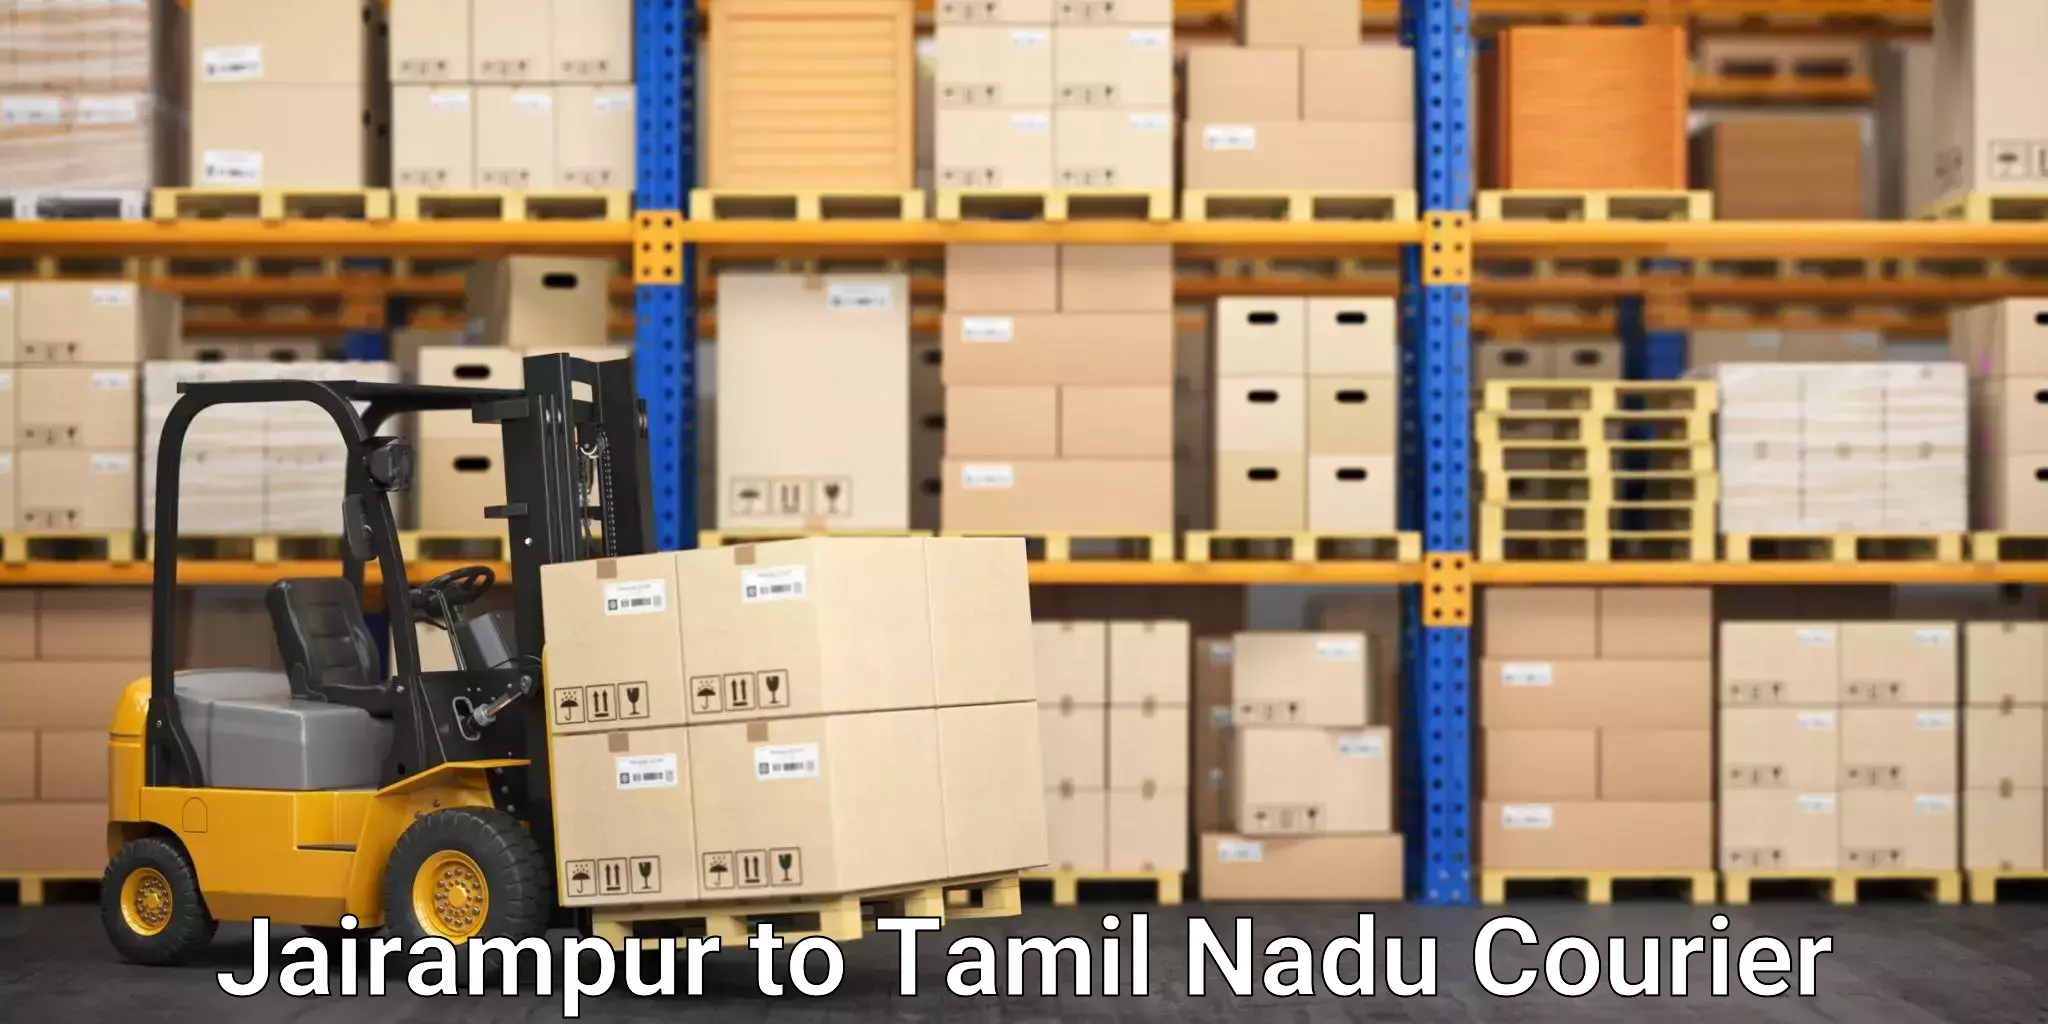 Nationwide parcel services Jairampur to Tamil Nadu